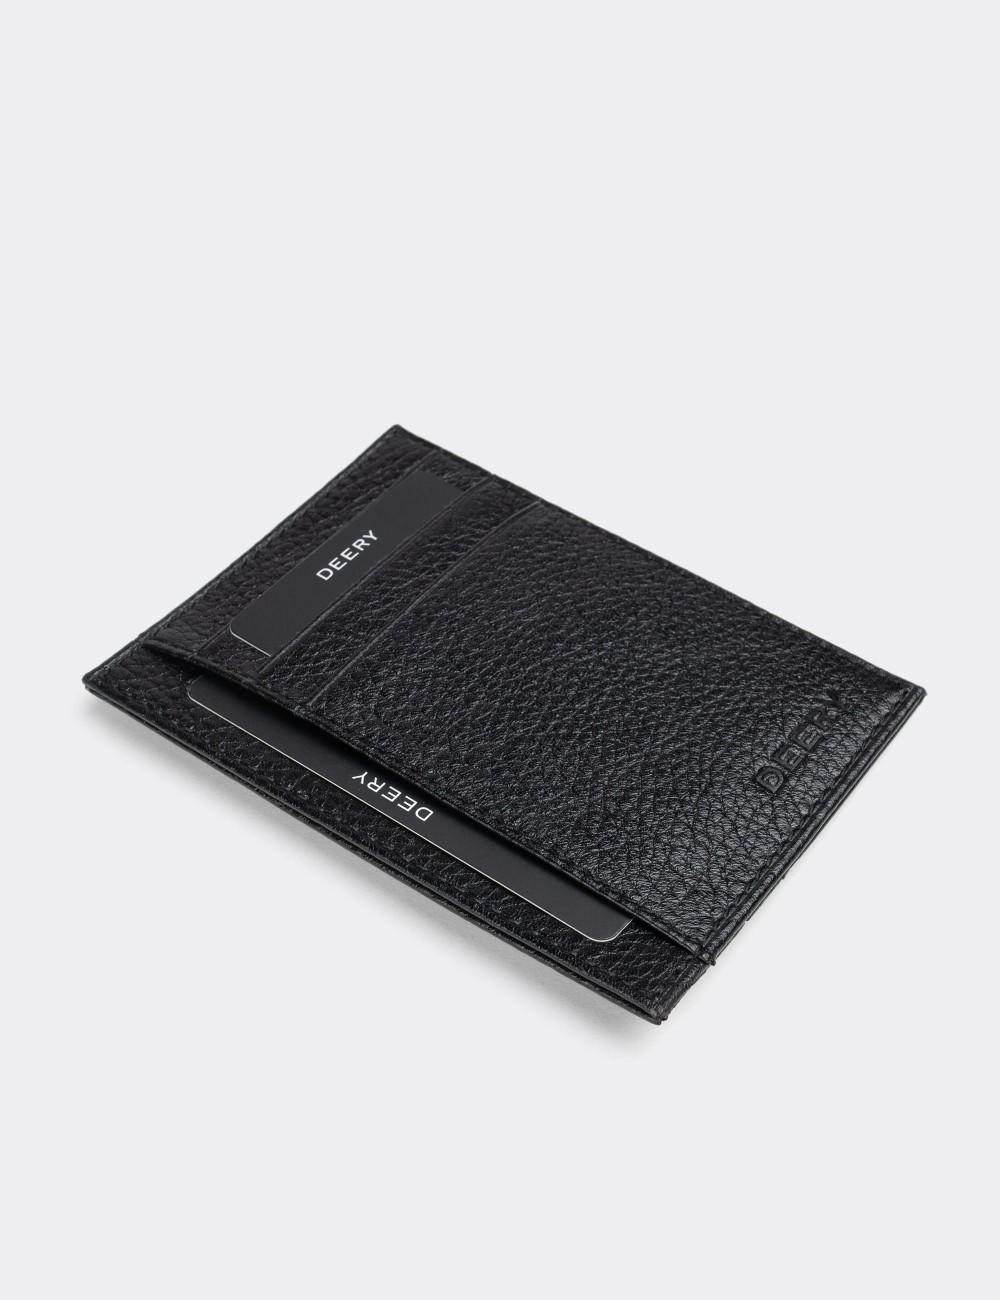  Leather Black Men's Wallet - 00588MSYHZ01